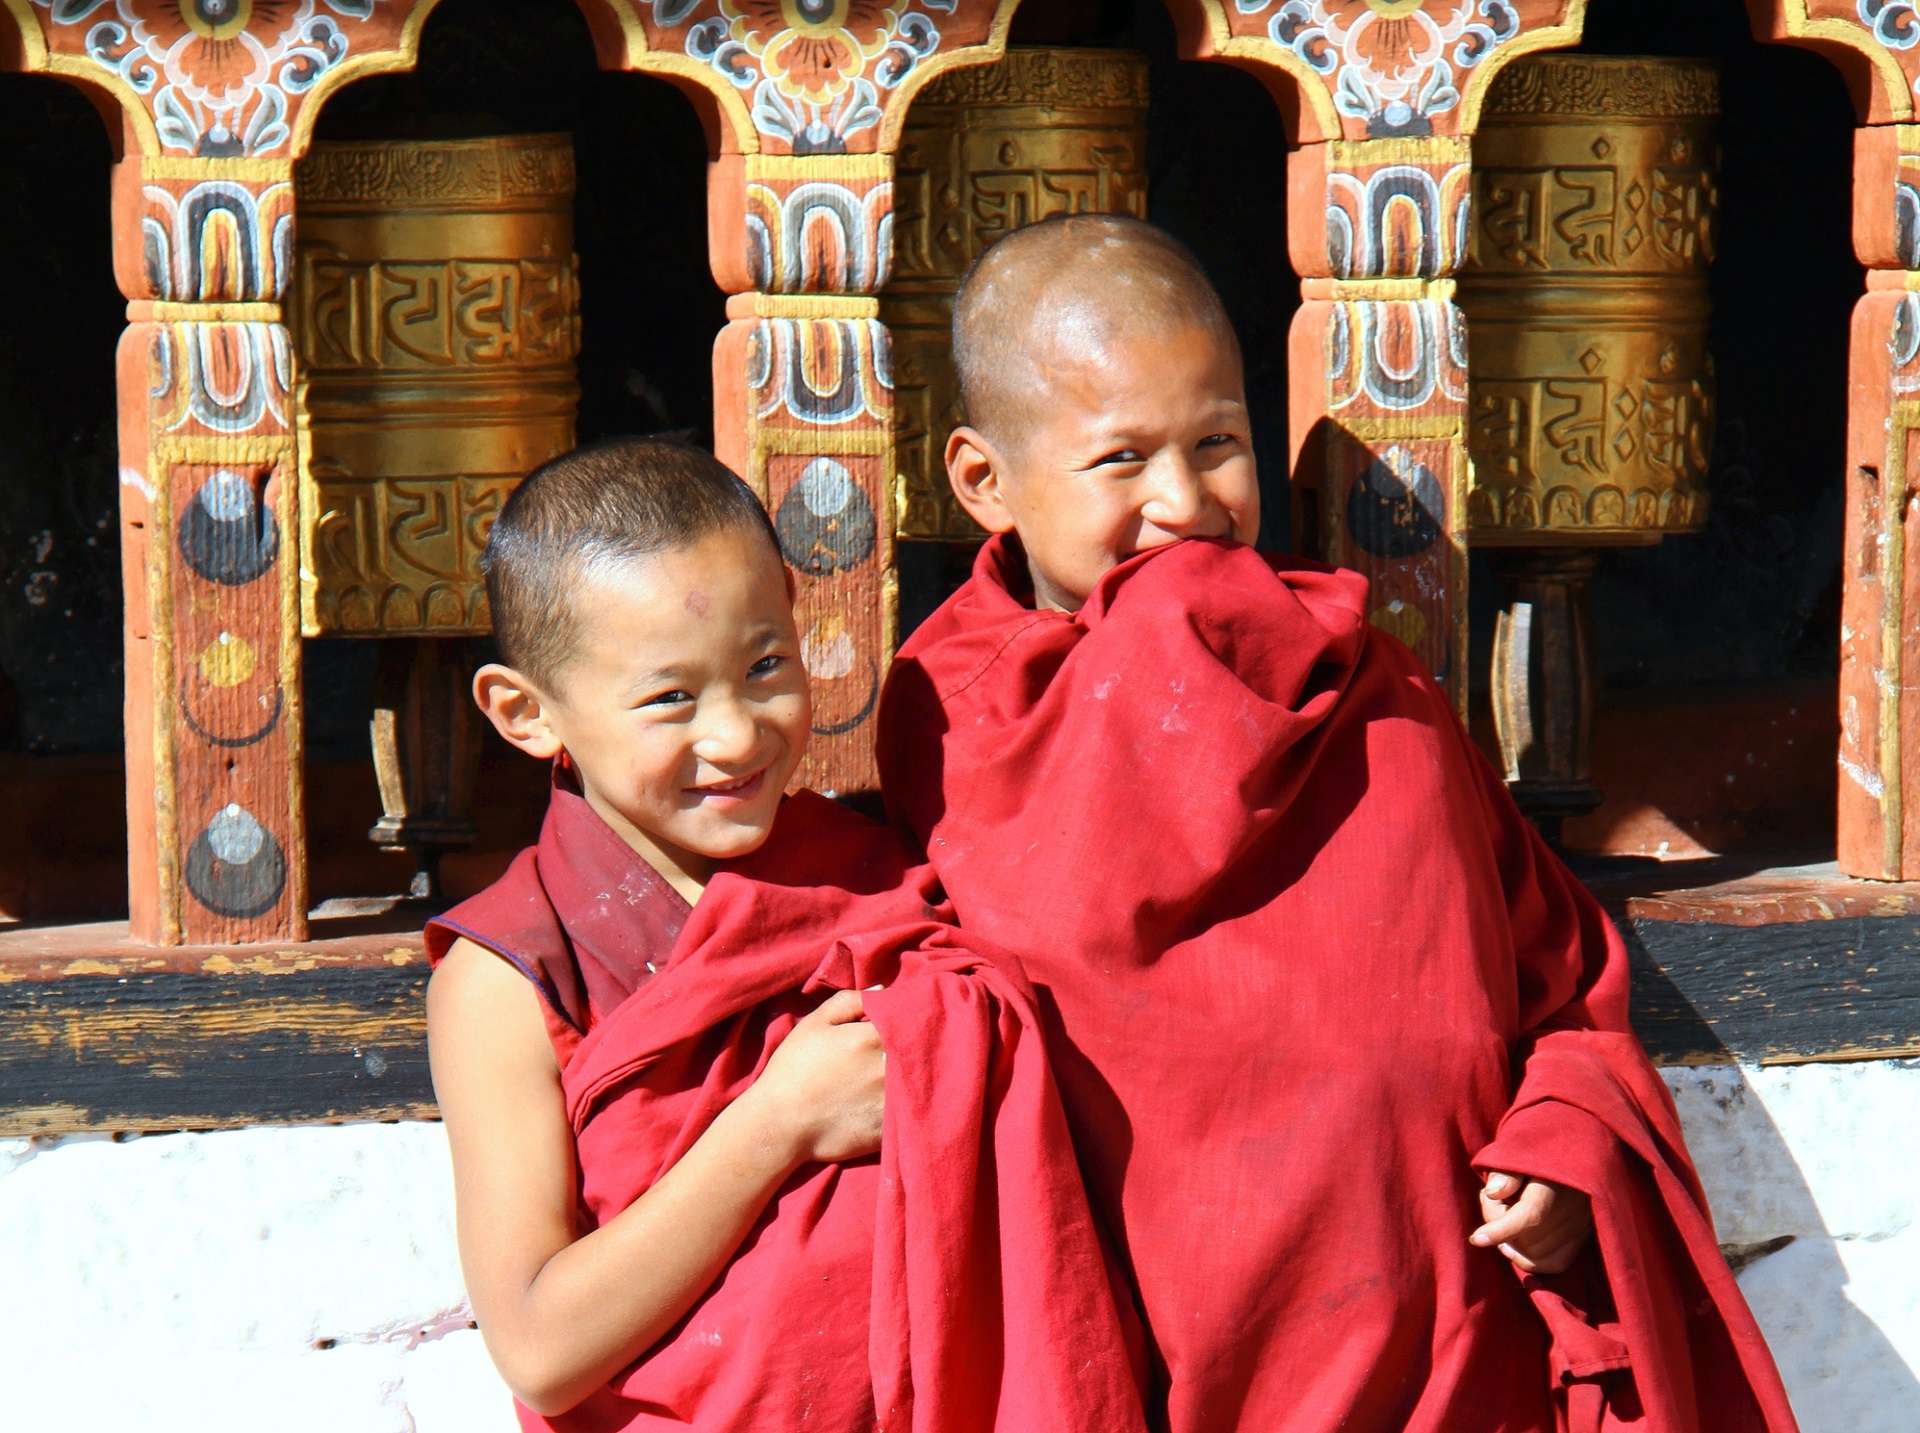 BHUTAN – KRÓLESTWO „SZCZĘŚCIA NARODOWEGO BRUTTO”